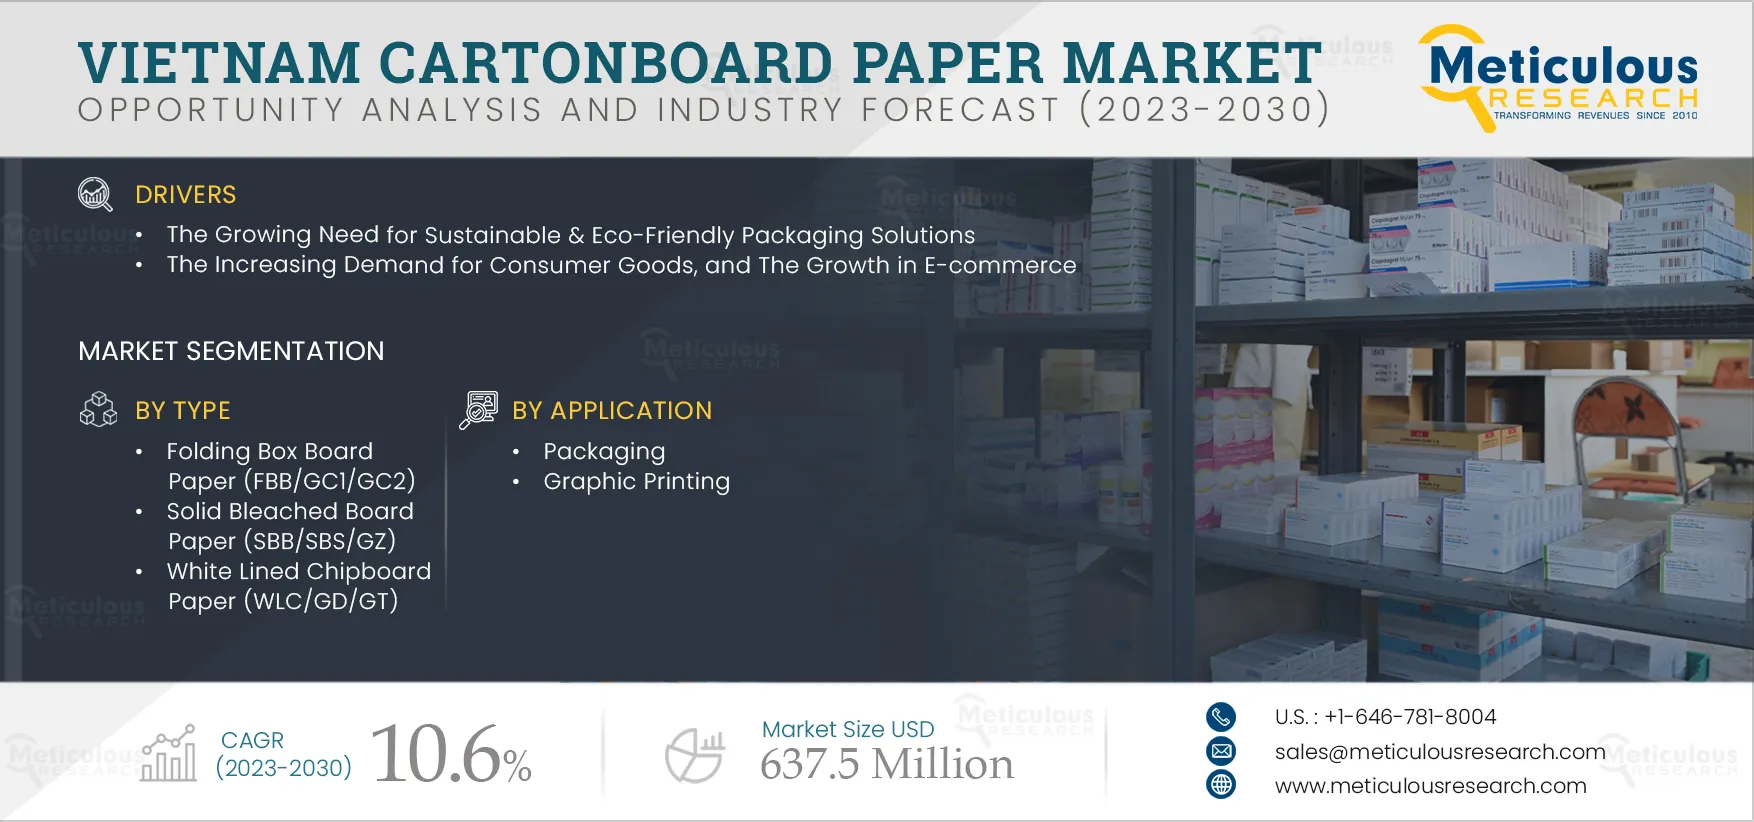 Vietnam Cartonboard Paper Market